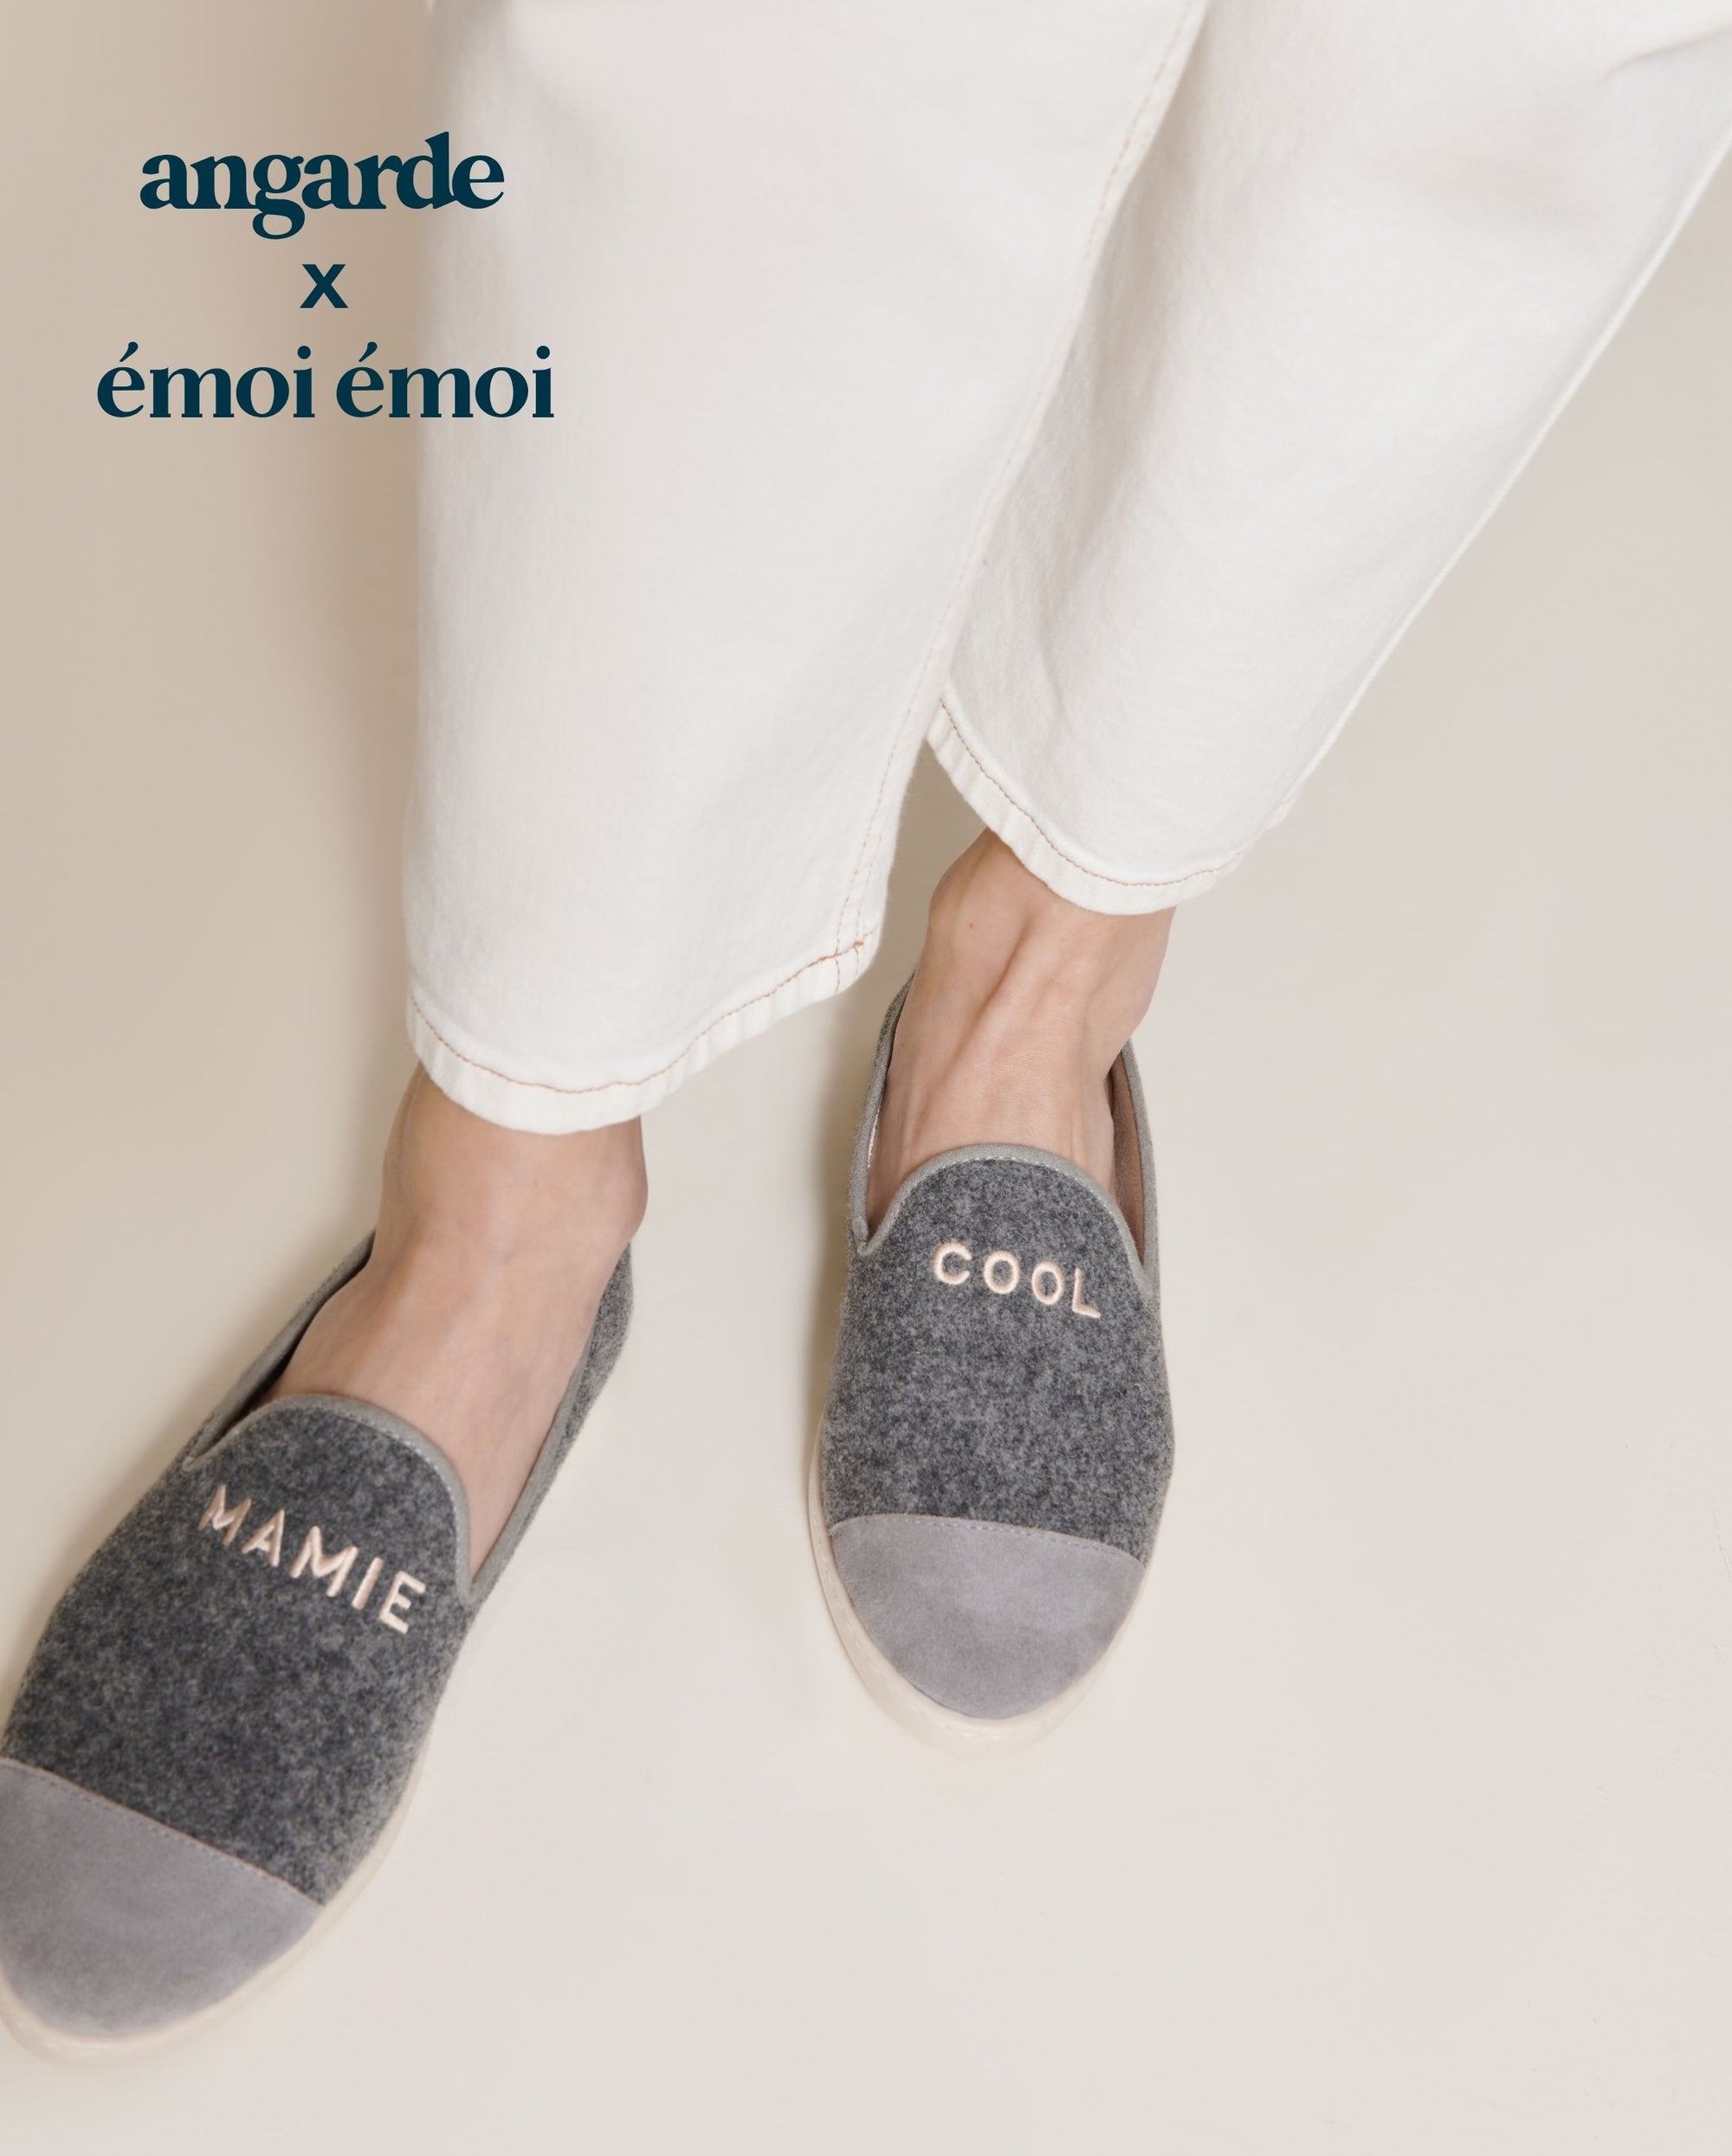 women's slippers mami cool emoi emoi Angarde packshot worn